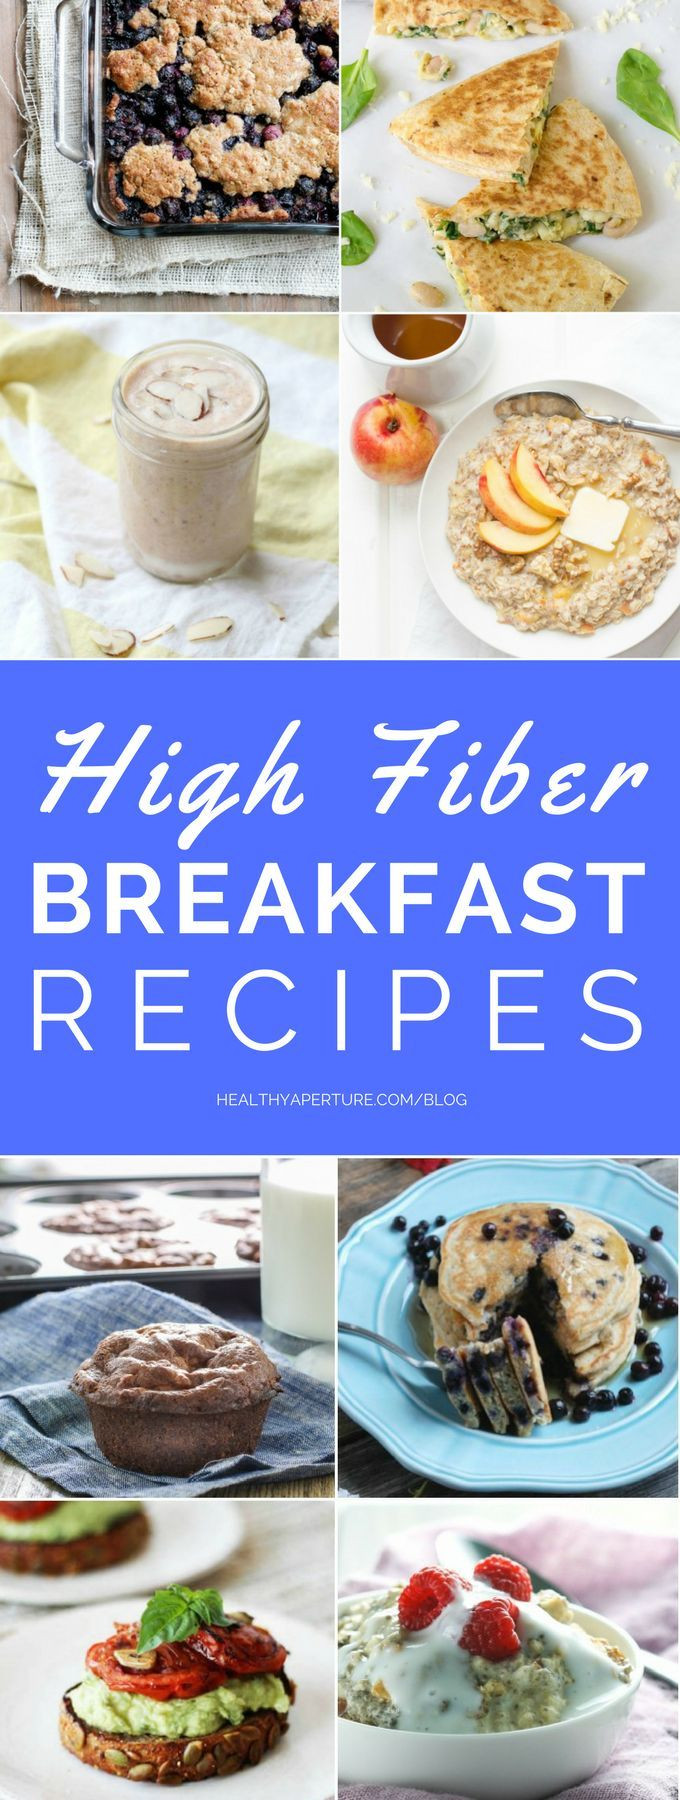 High Fiber Food Recipes
 Best 25 High fiber foods ideas on Pinterest